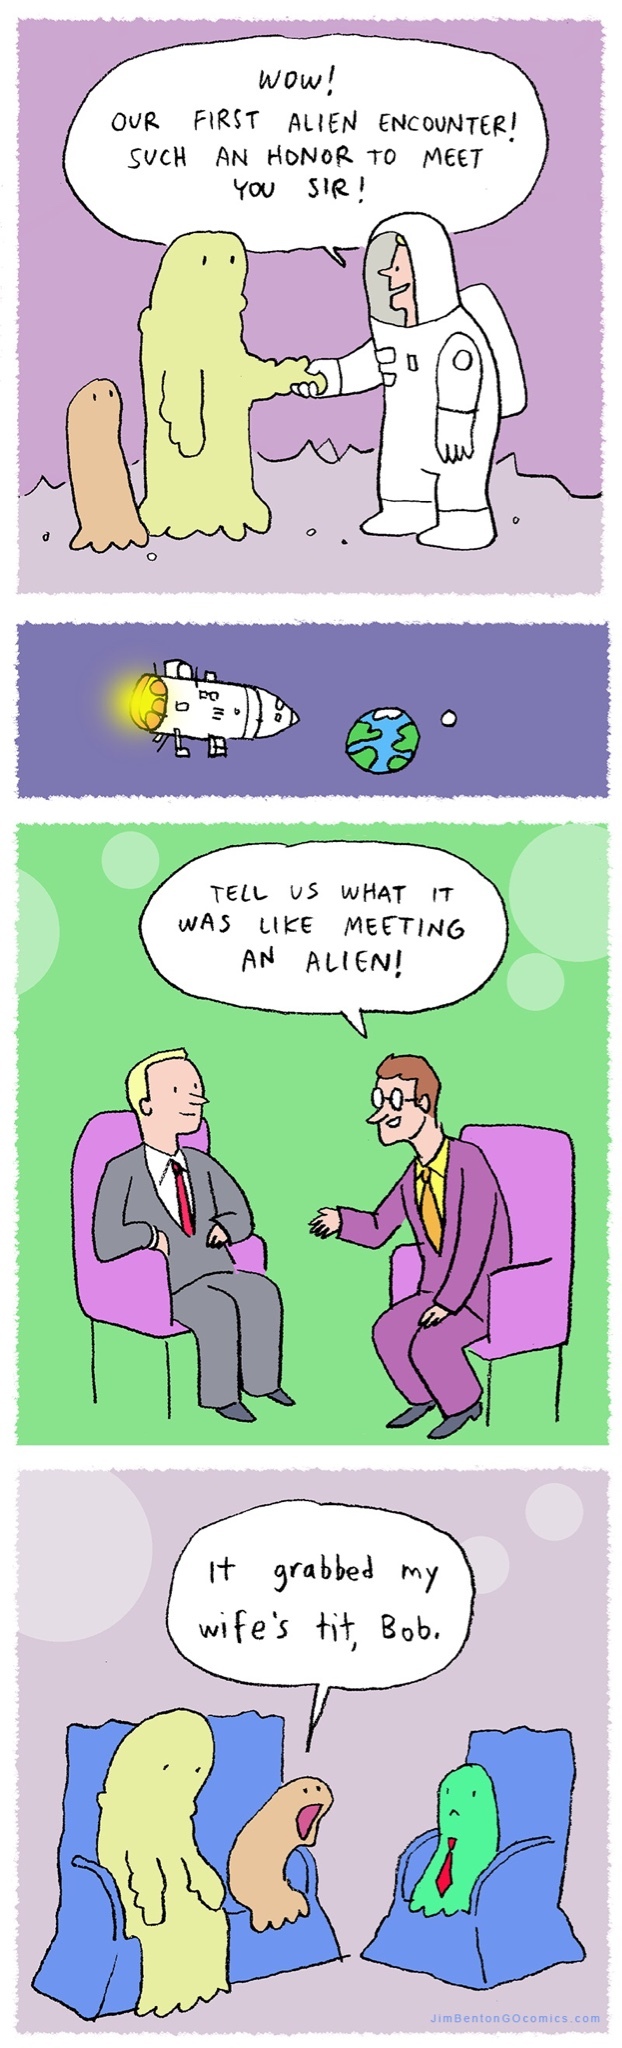 Alien meeting - meme